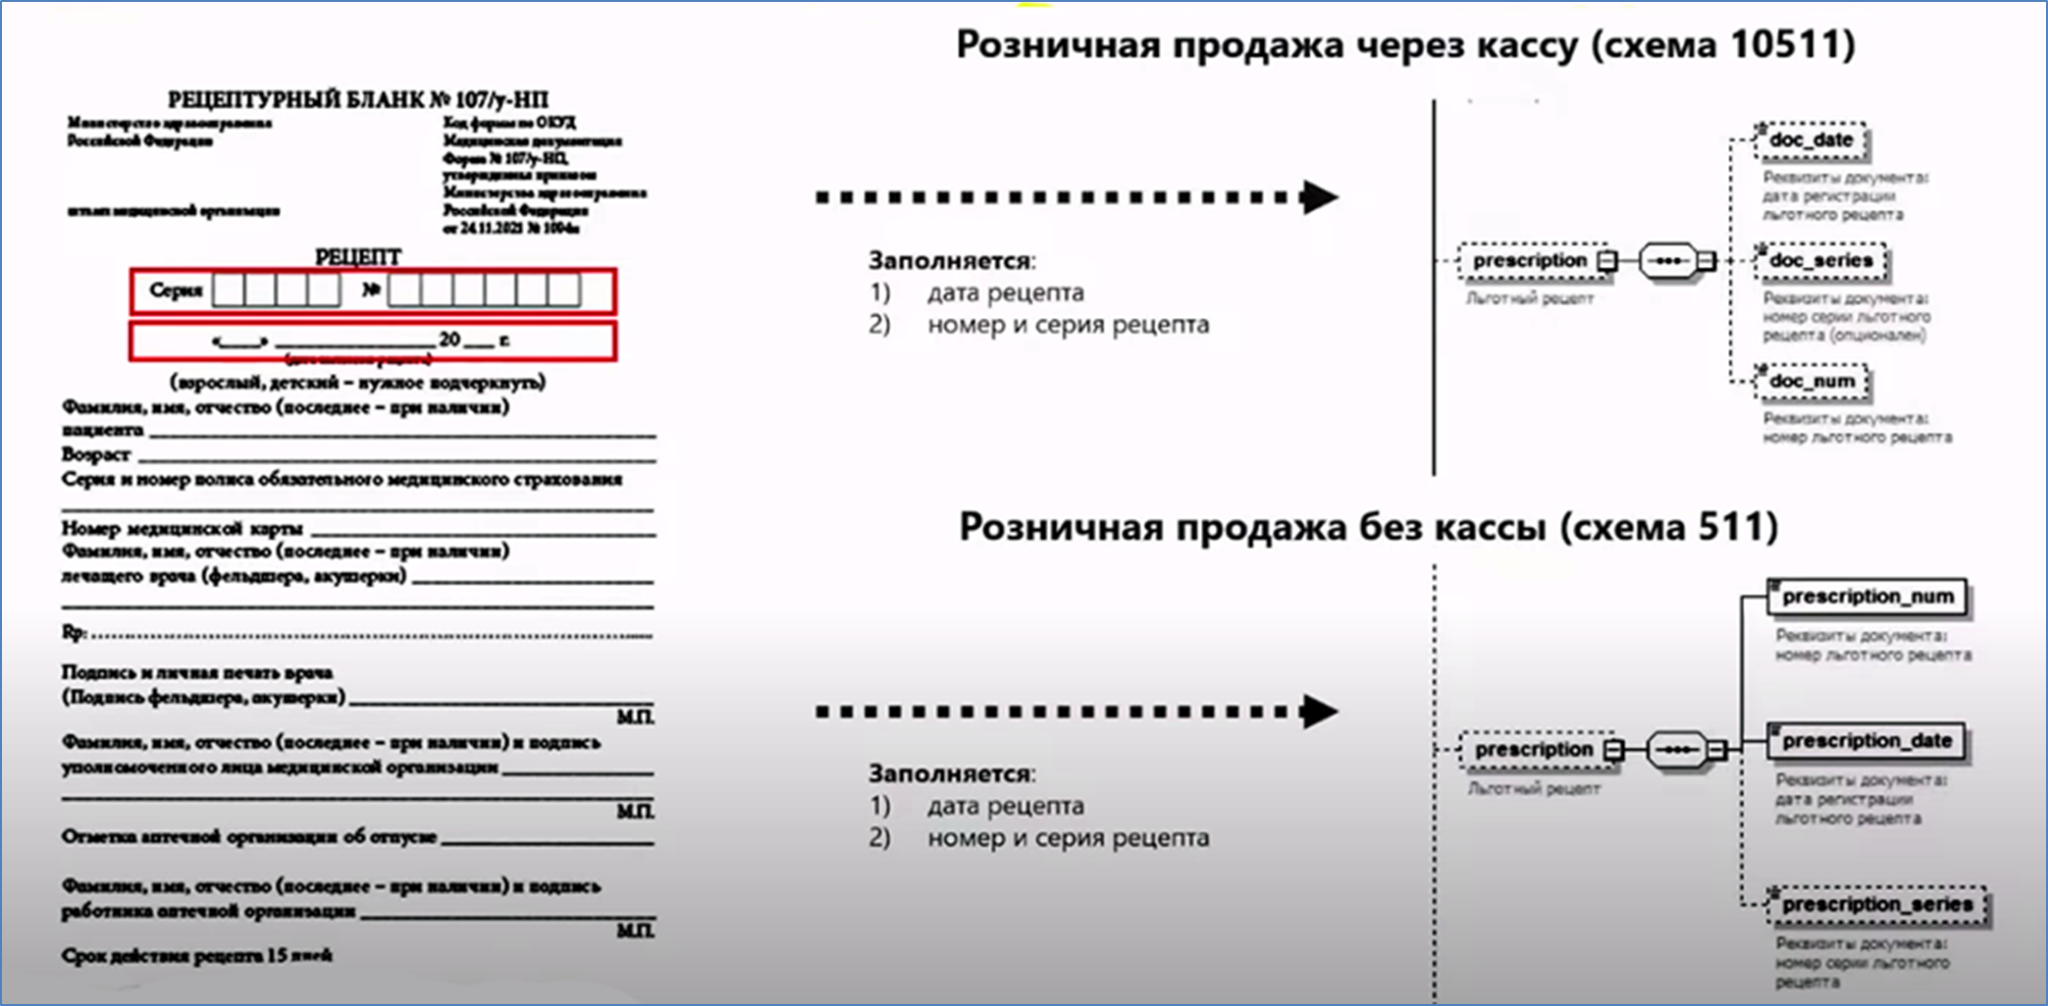 Москва льготные рецепты. Код категории граждан для льготных региональных рецептов.